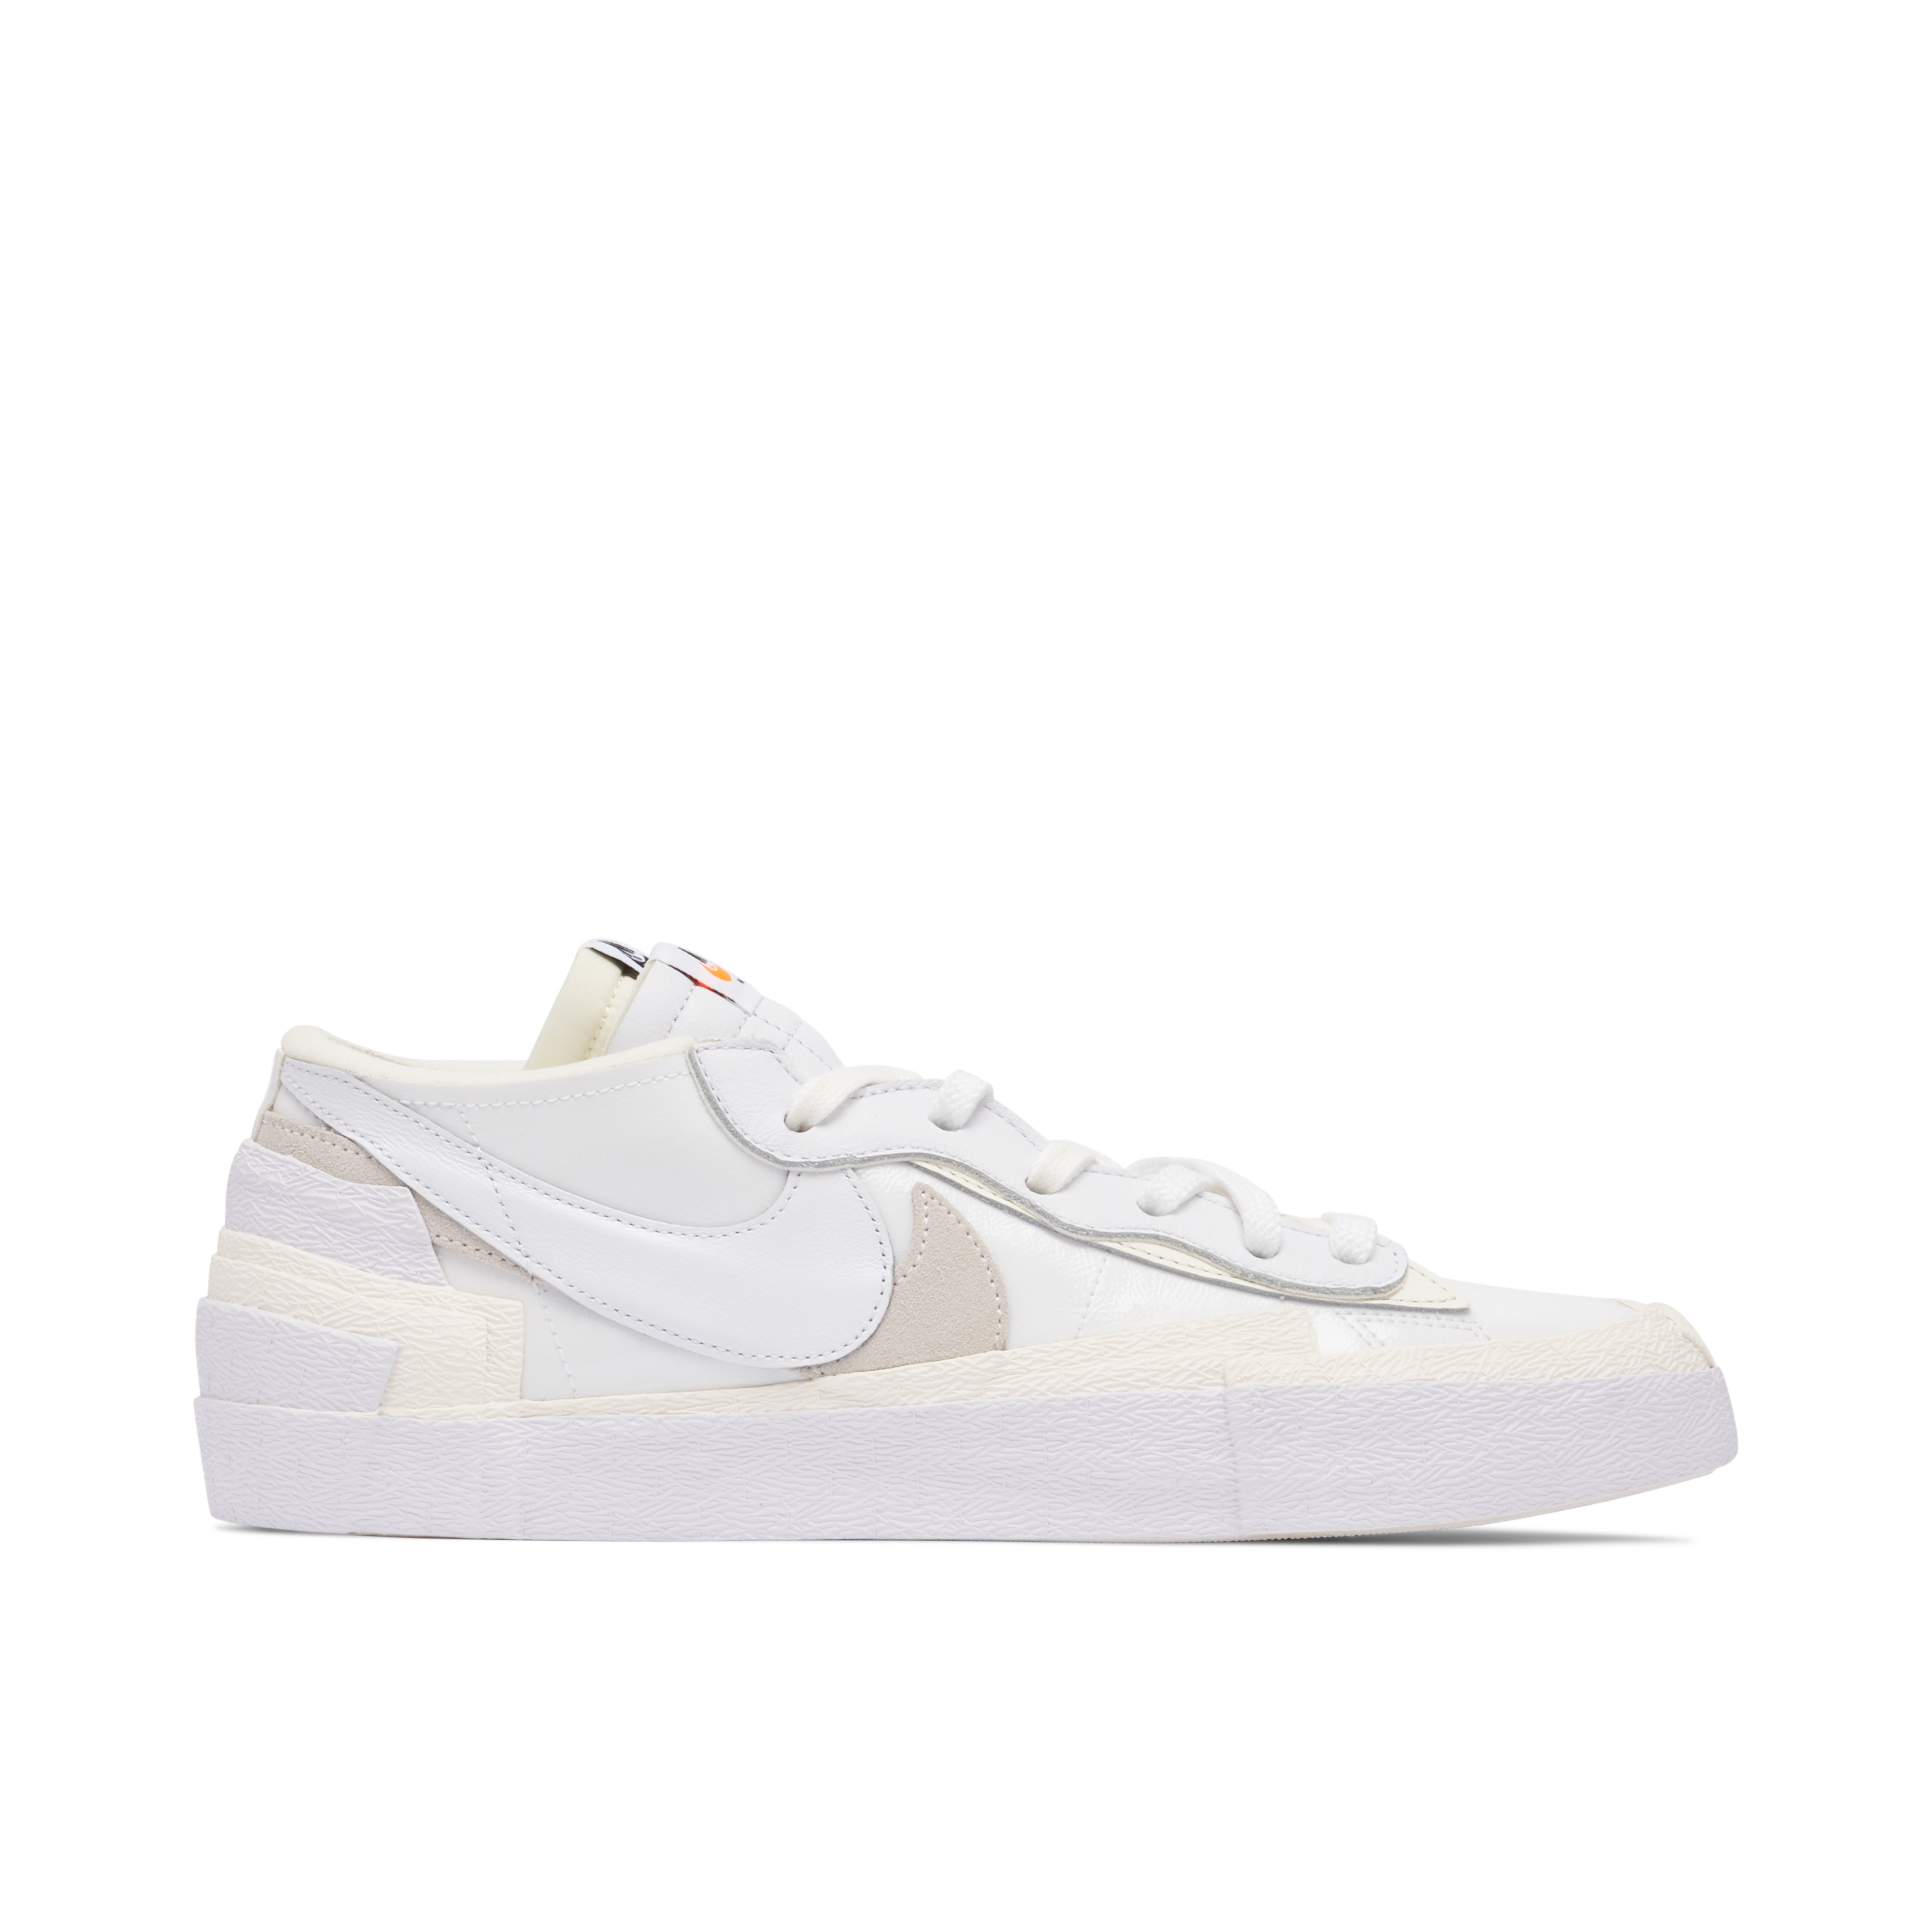 sacai x Nike Blazer Low White | DM6443-100 | Laced